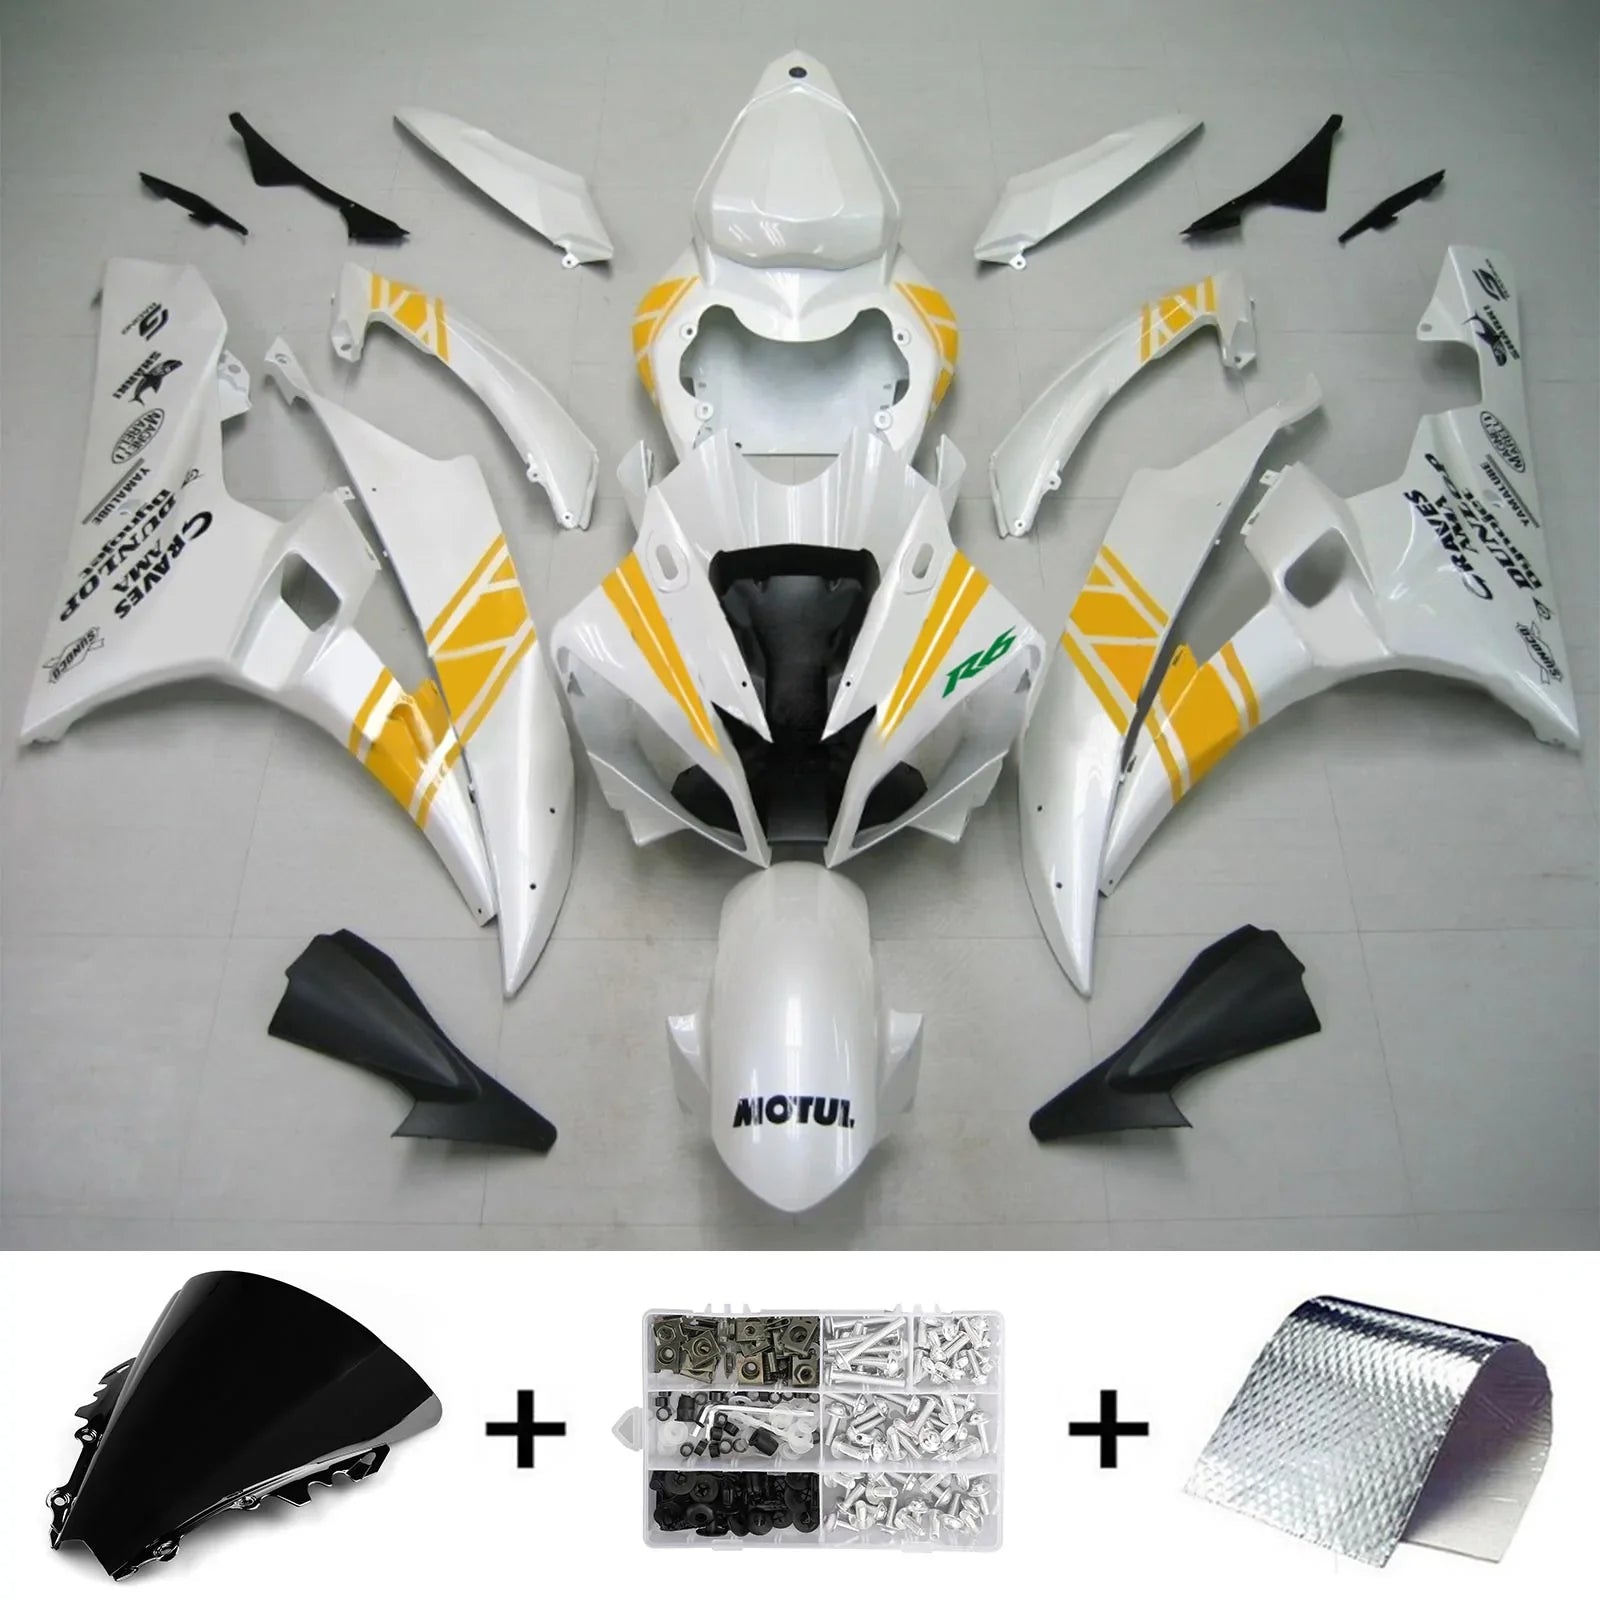 Kit de carénage Amotopart pour Yamaha YZF 600 R6 2006-2007 générique